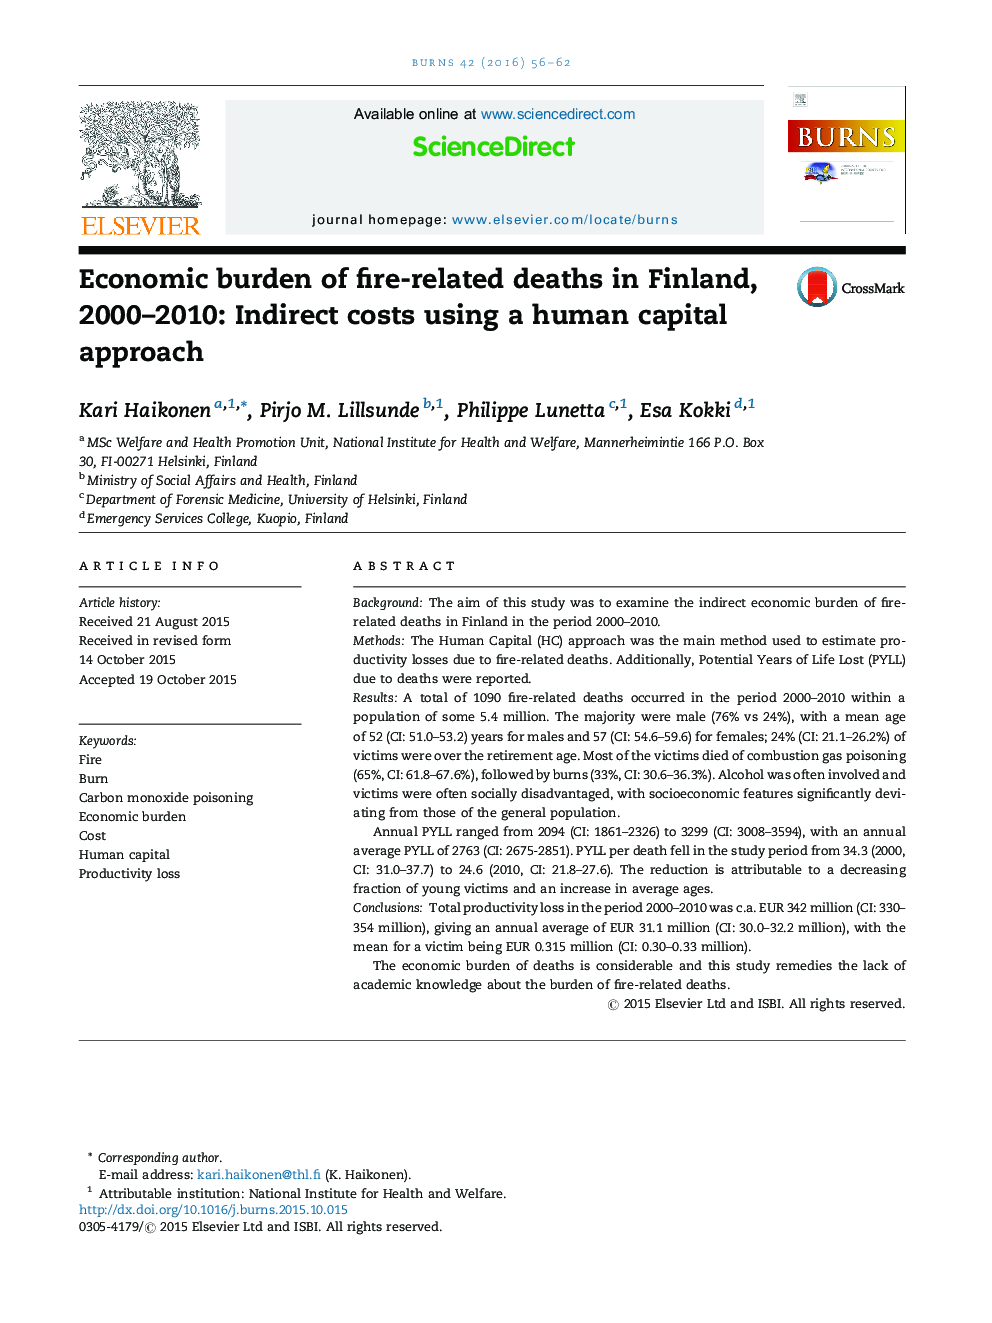 بار اقتصادی از مرگ و میر مرتبط با آتش سوزی در فنلاند، 2000-2010: هزینه های غیر مستقیم با استفاده از رویکرد سرمایه انسانی 